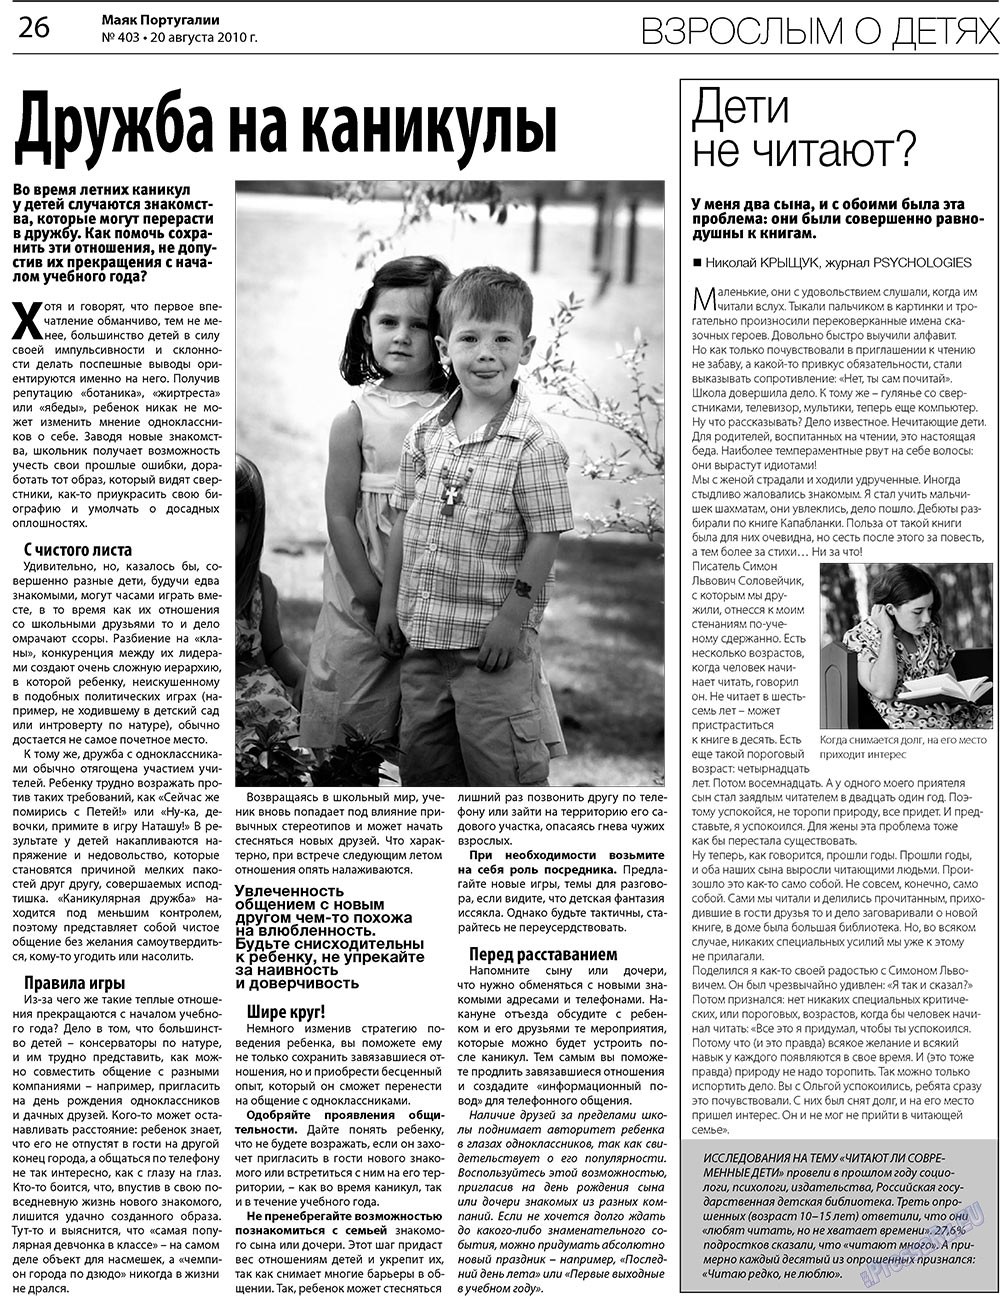 Маяк Португалии (газета). 2010 год, номер 403, стр. 26